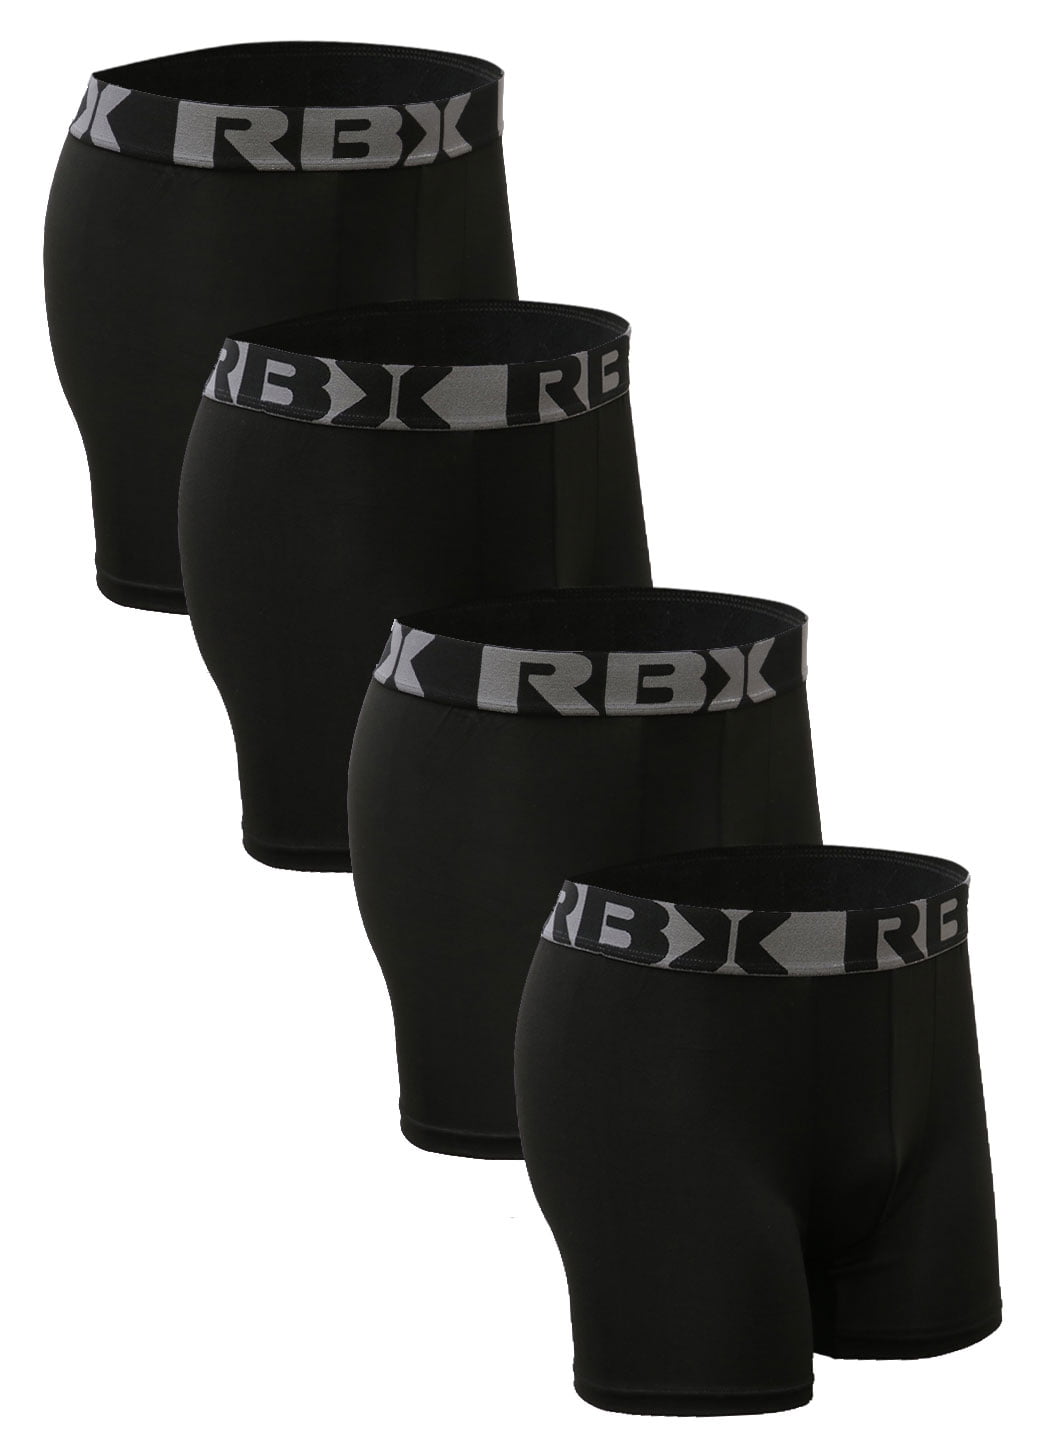 Rbx Rbx Active Men S Ultra Soft Boxer Briefs Multi Pack Set